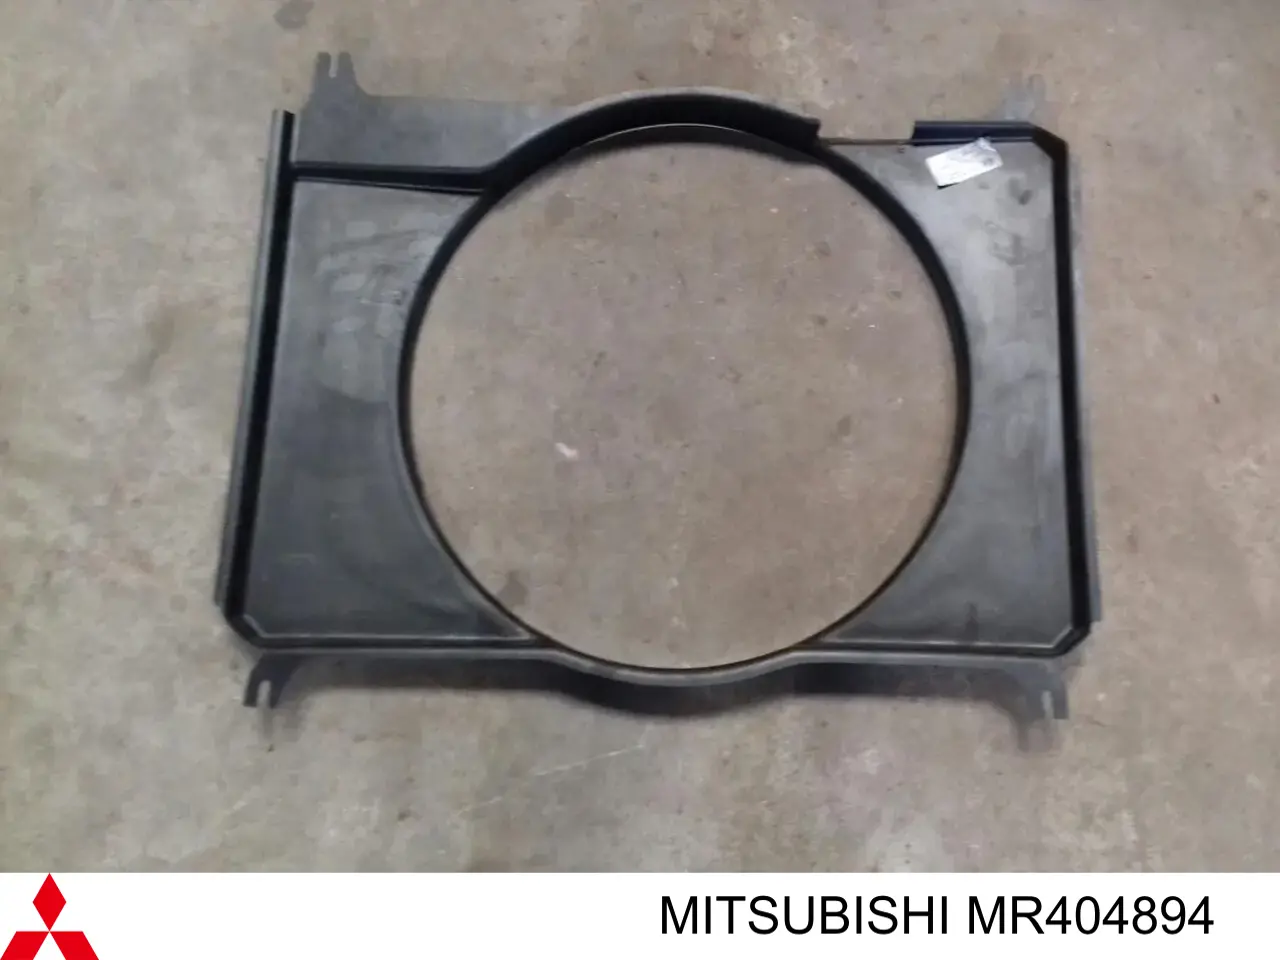 Conduto de ar (defletor) do radiador para Mitsubishi Pajero (V90)